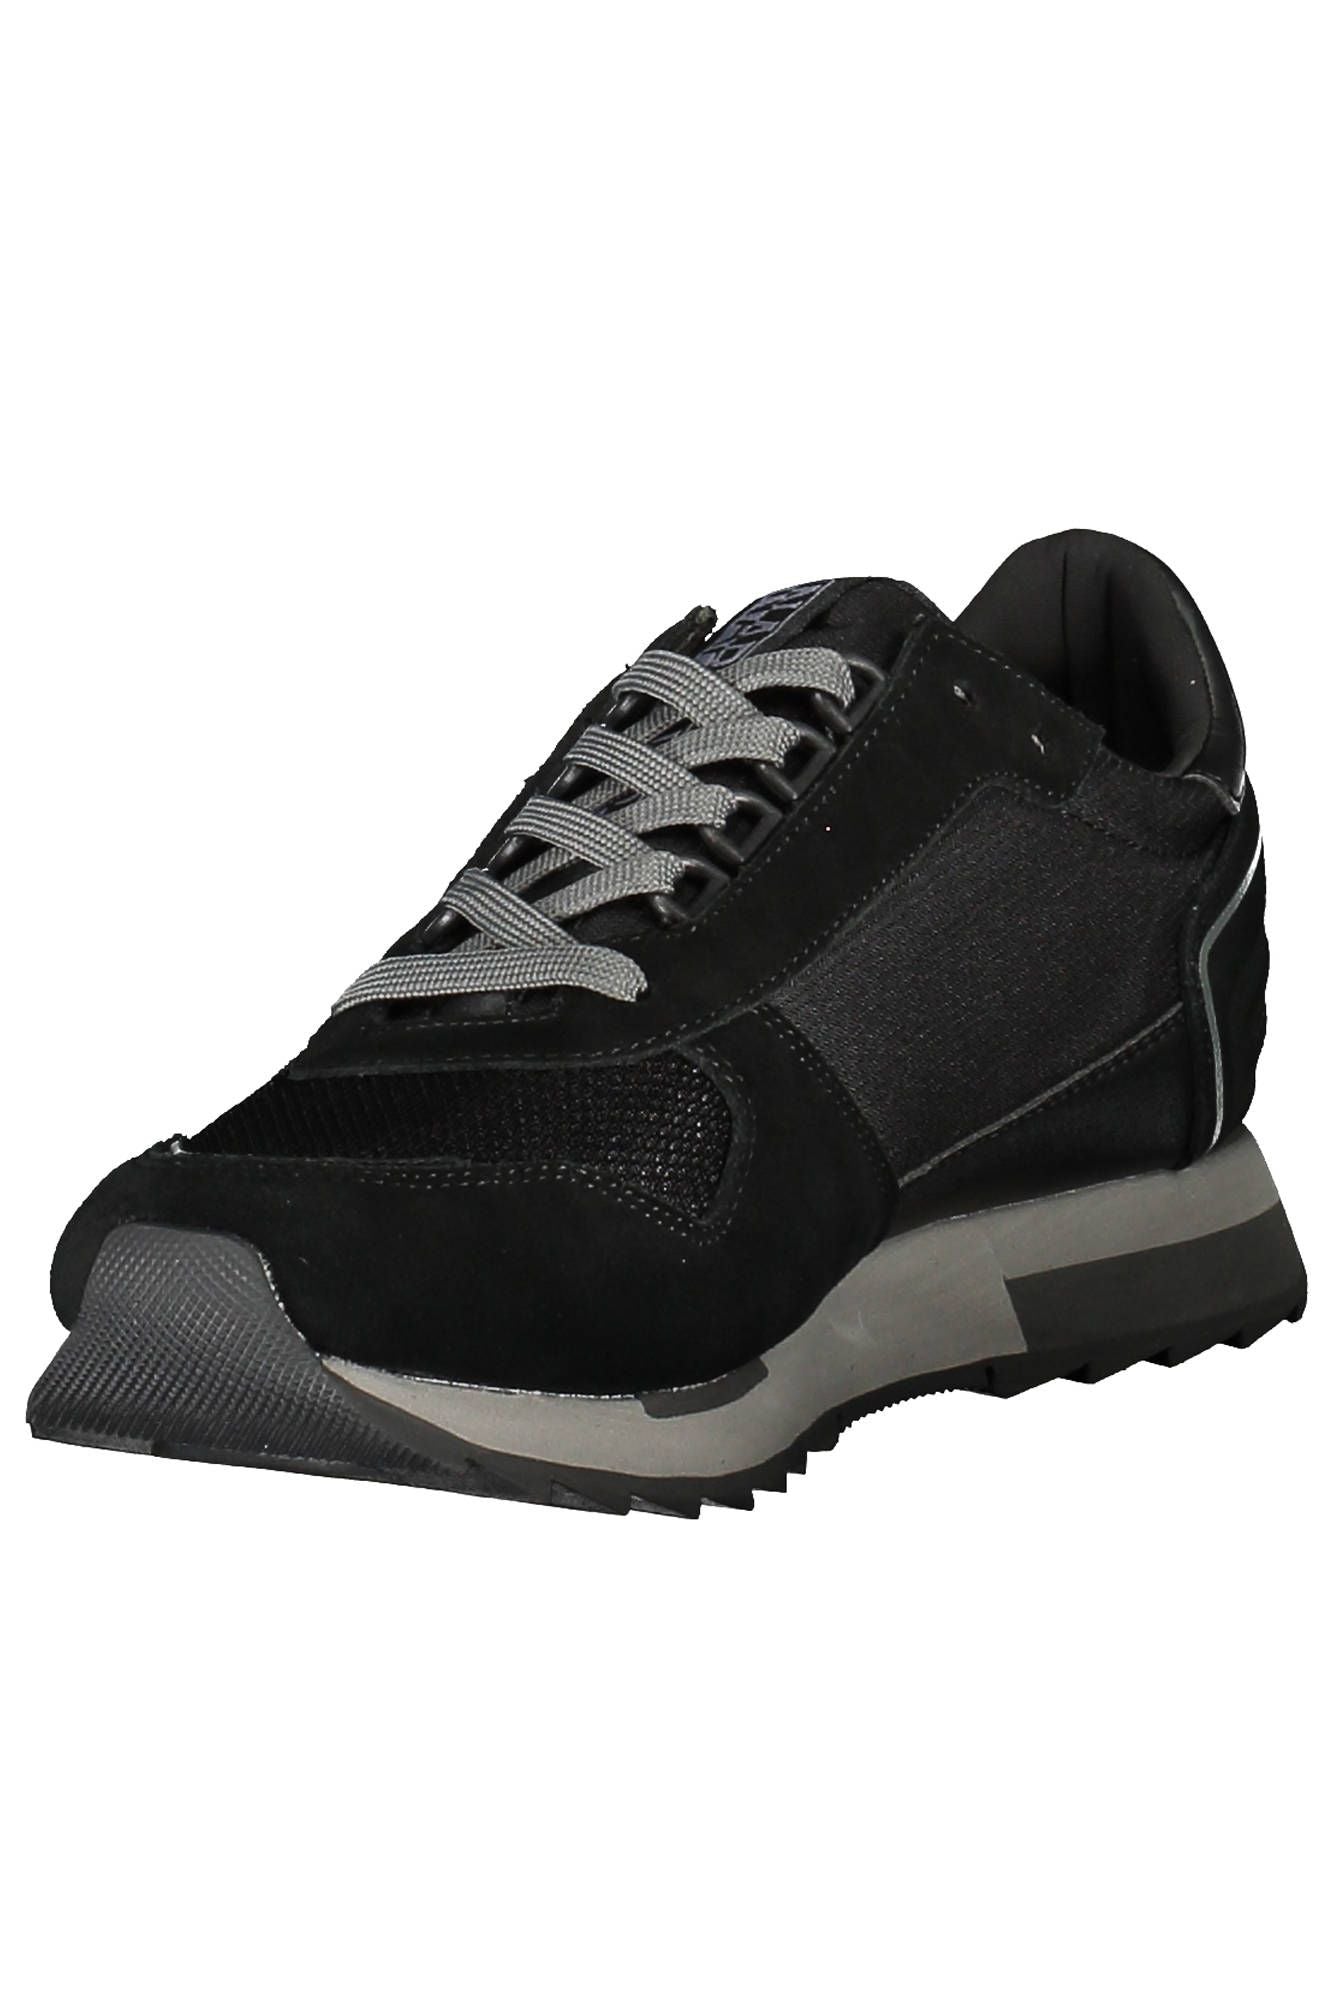 Napapijri Black Polyester Sneaker